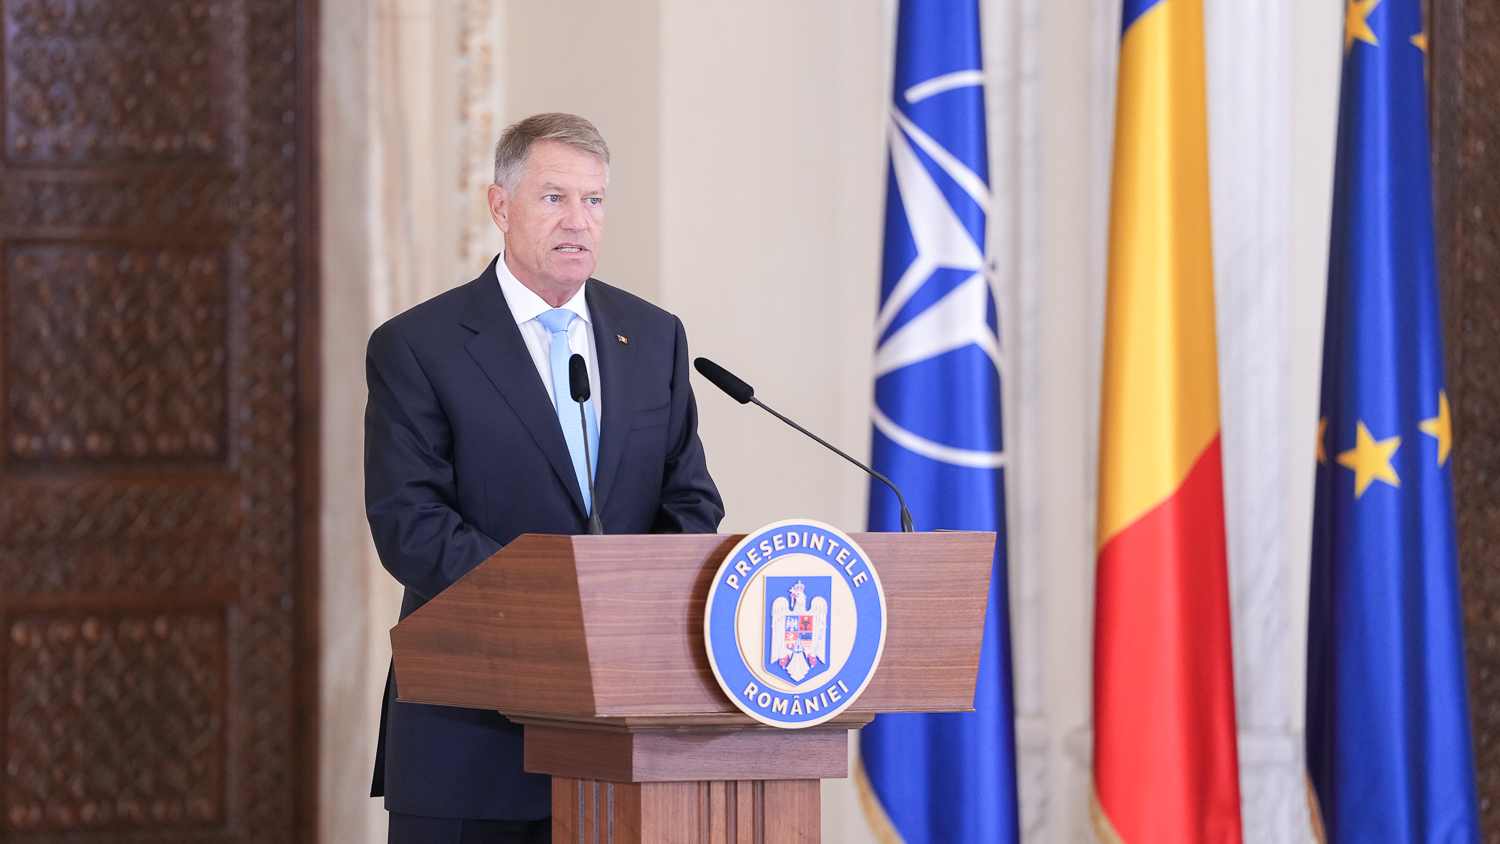 Iohannis: Germania participă activ la tranziţia României către economia viitorului